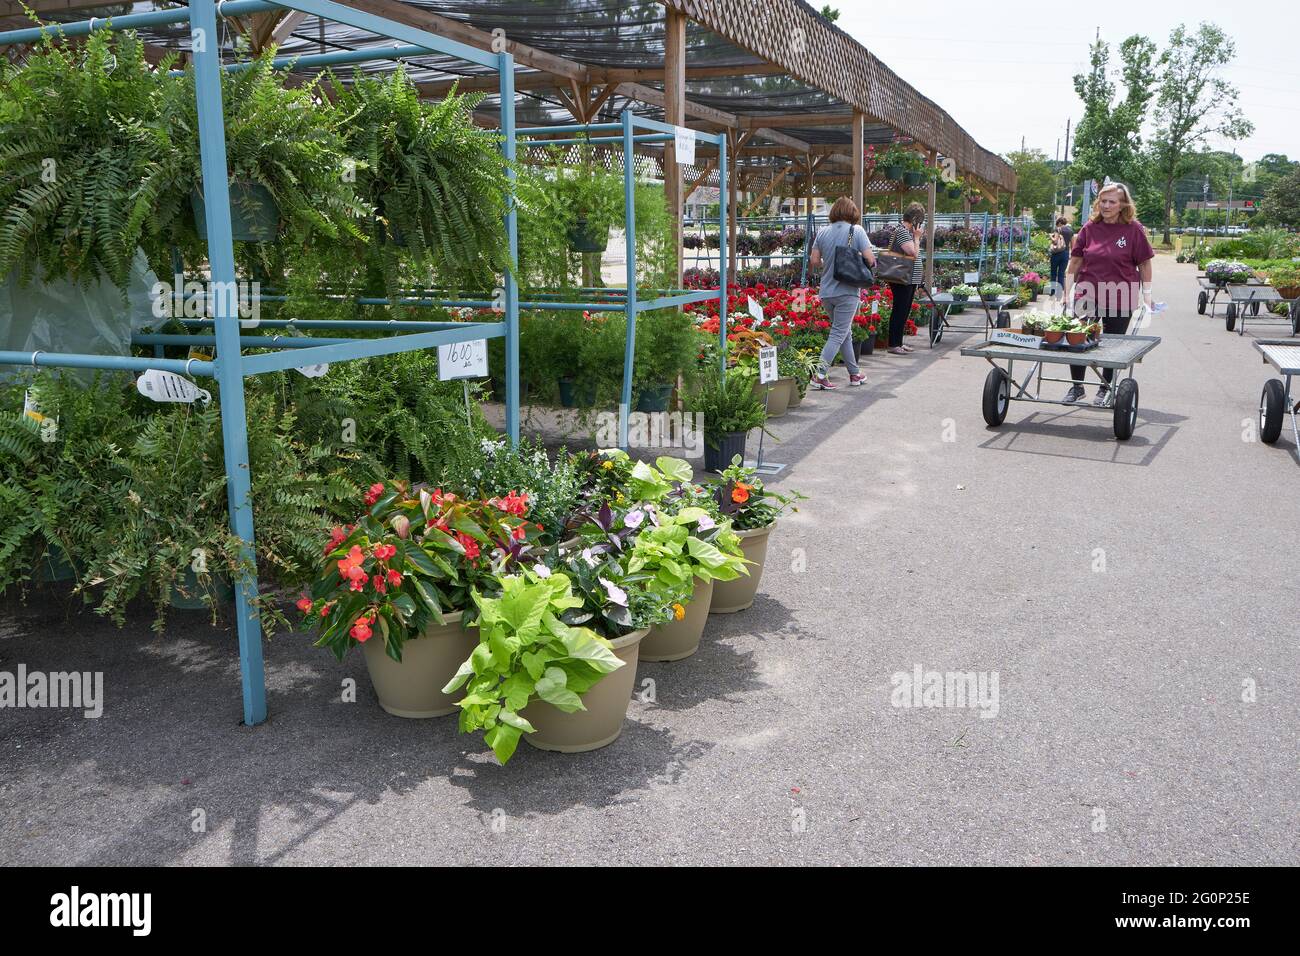 Centro de jardín al aire libre con gente que compra y compra plantas y flores en Montgomery Alabama, Estados Unidos. Foto de stock